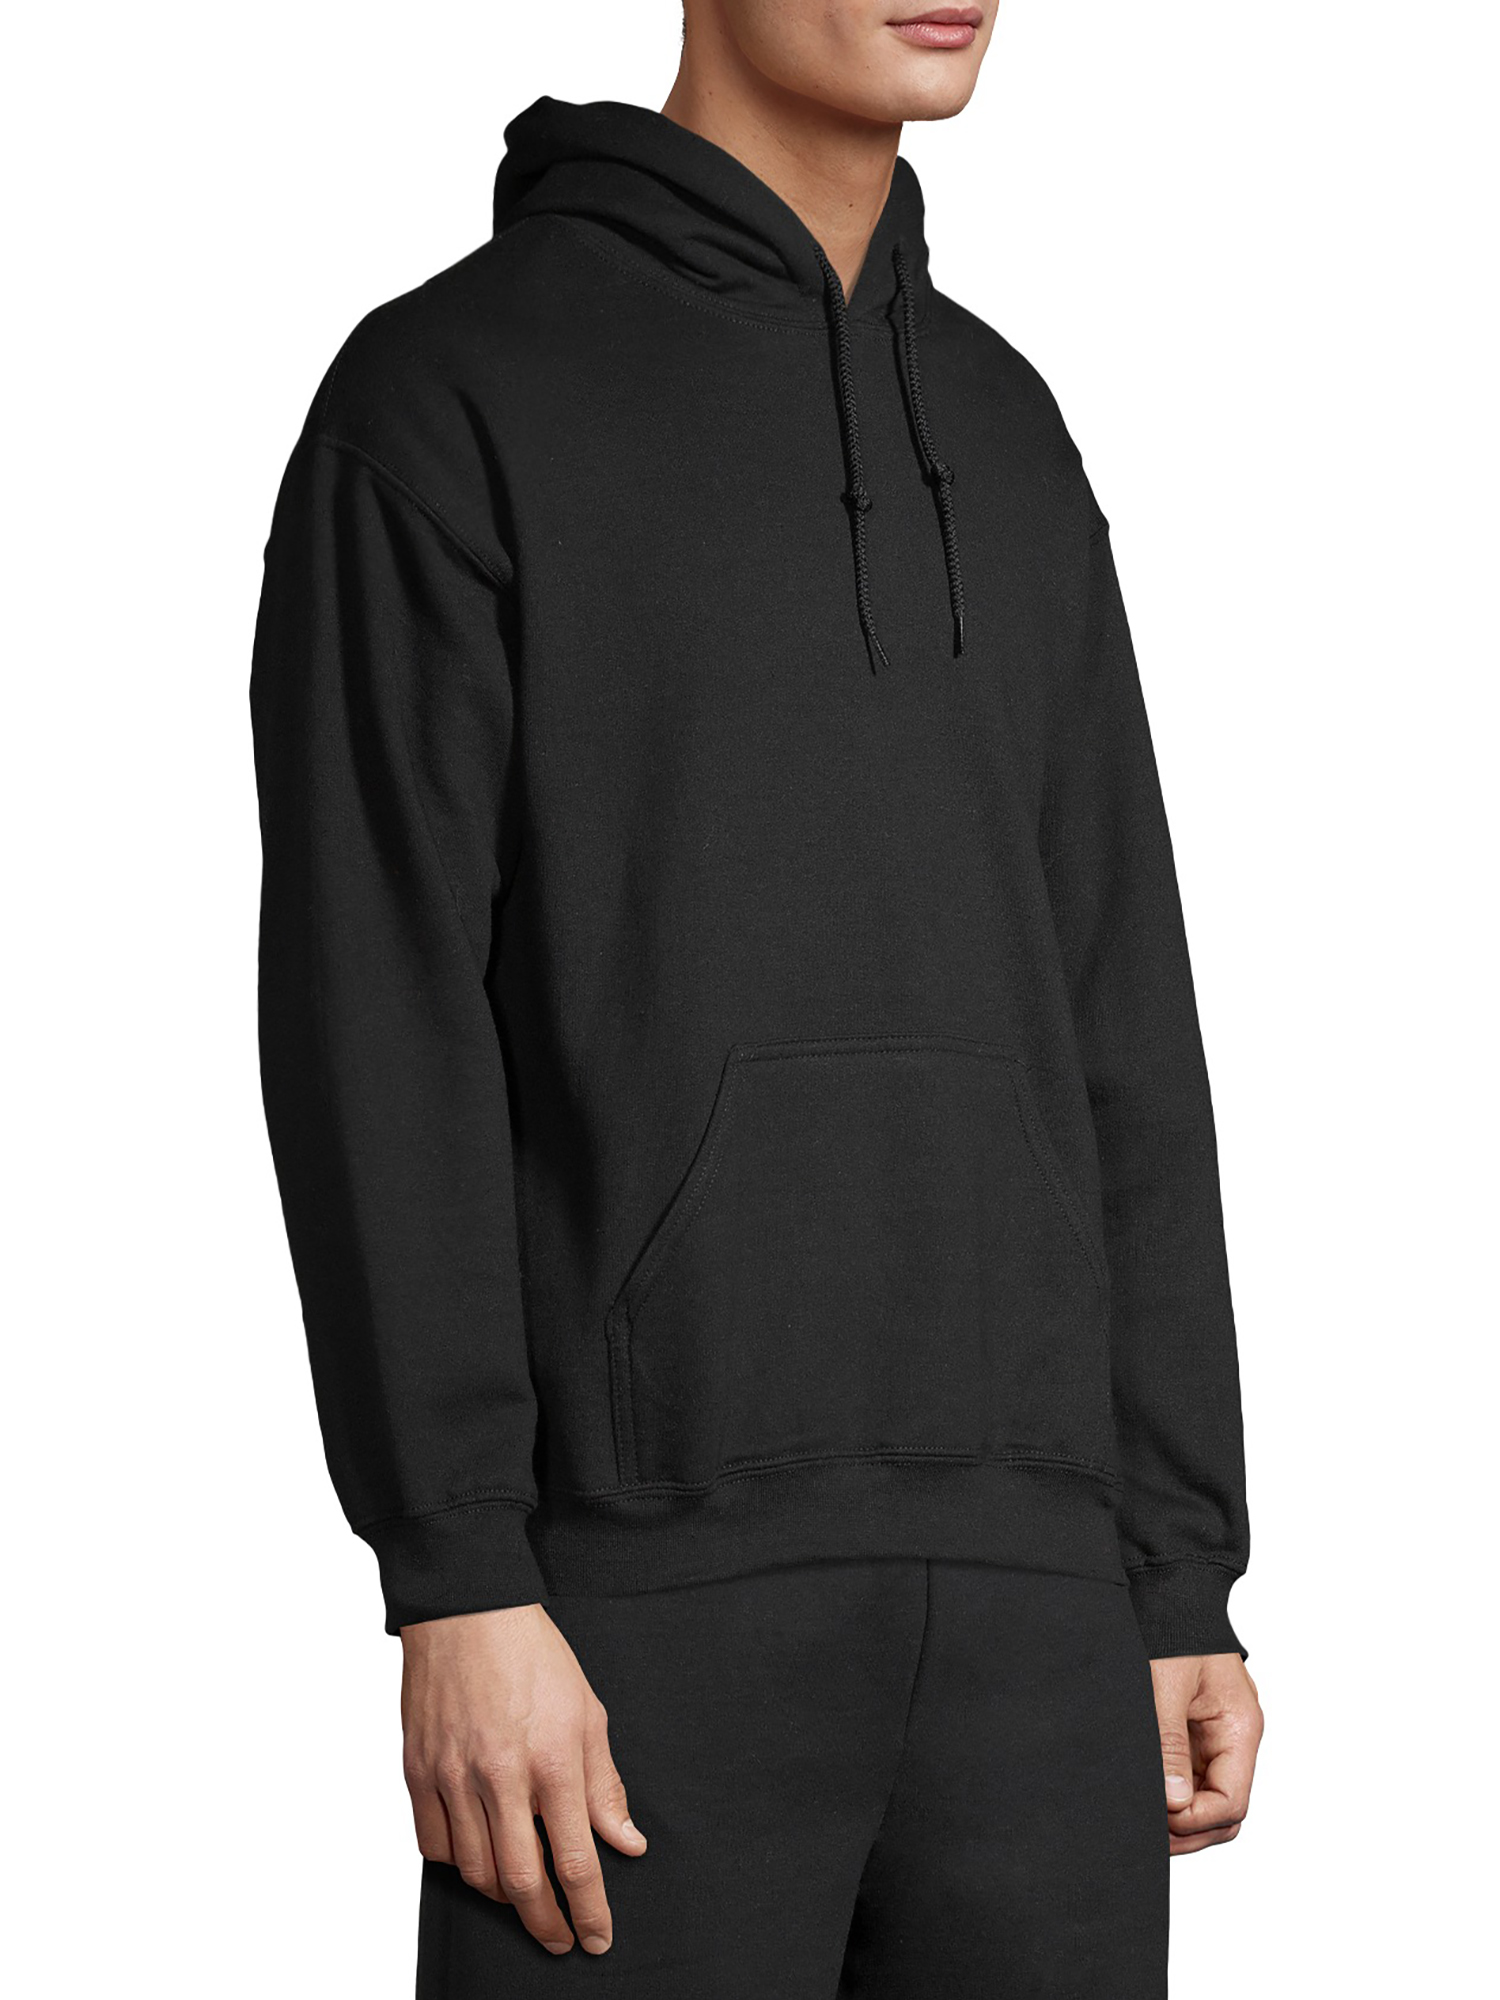 Gildan Unisex Heavy Blend Fleece Hooded Sweatshirt, Size Small to 3XL - image 3 of 6